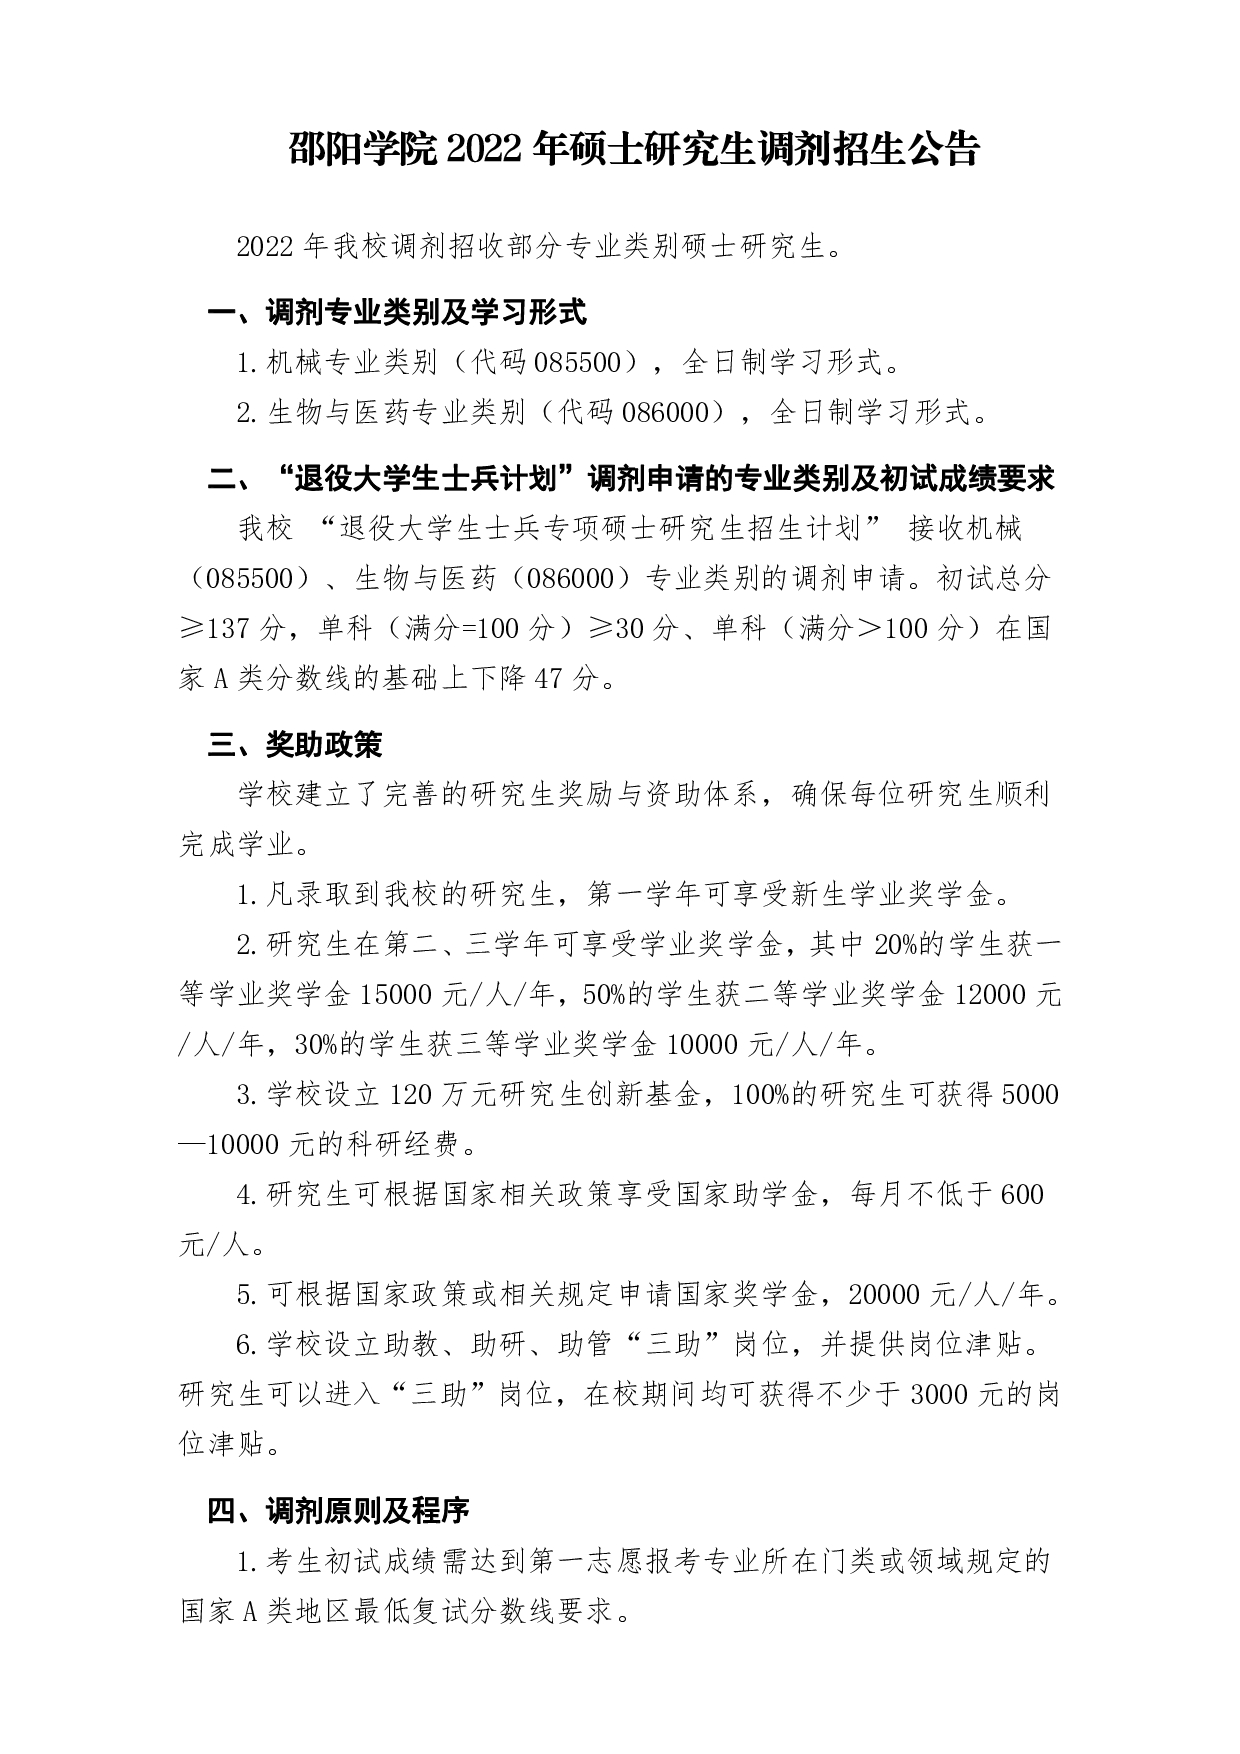 邵阳学院2022年硕士研究生调剂招生公告第1页